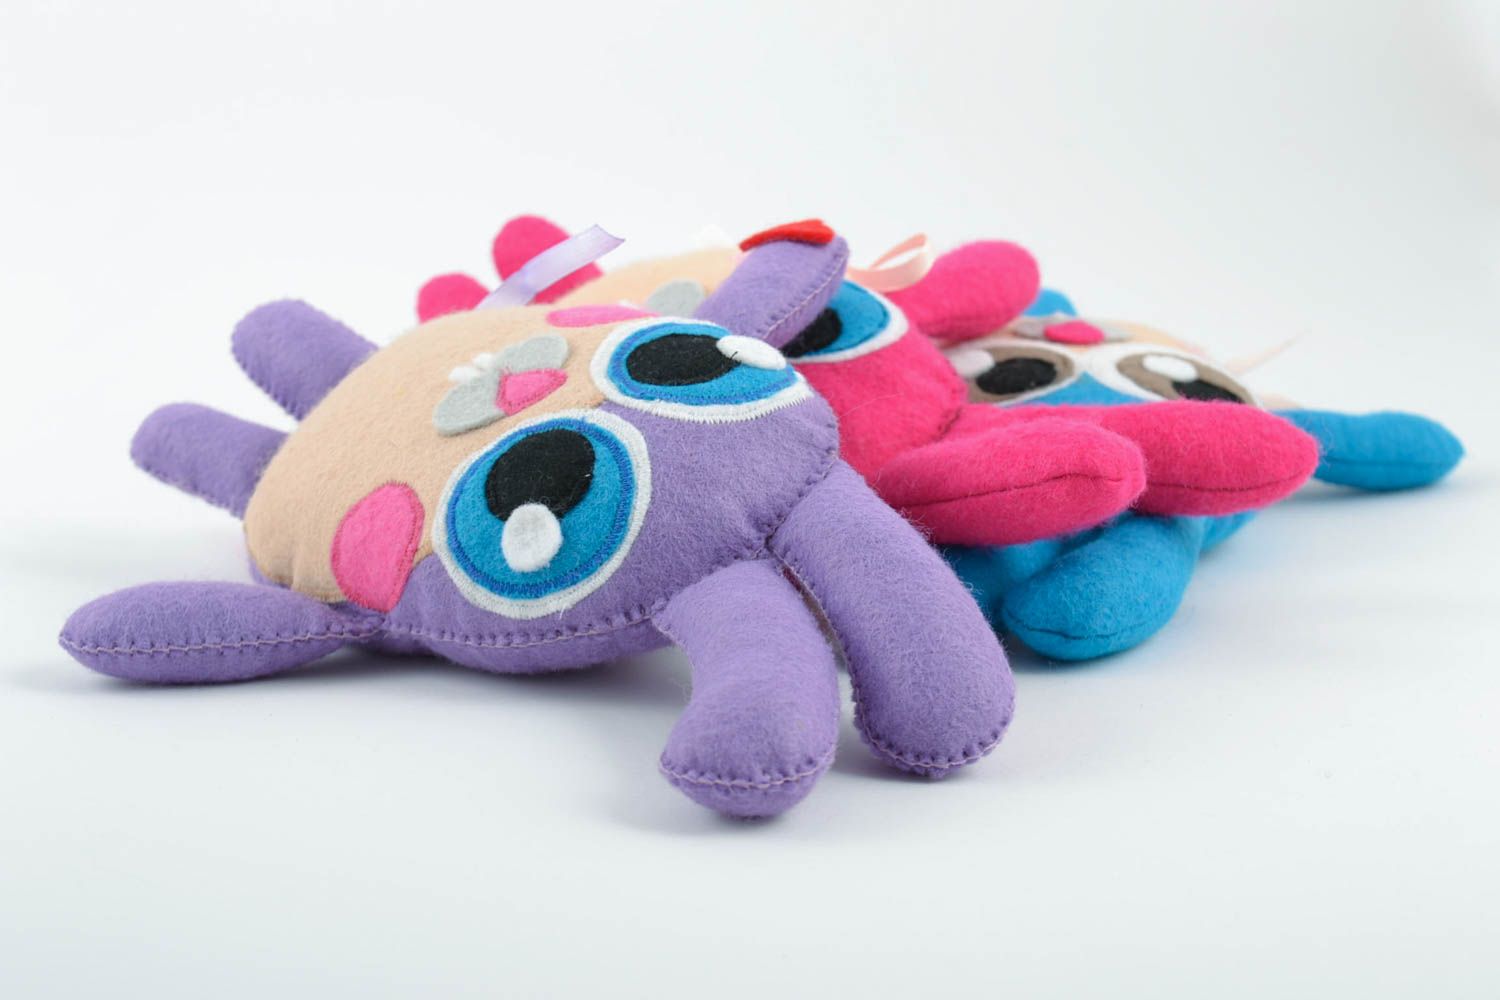 Мягкие игрушки набор зайцев ручной работы из ткани авторские для детей 3 штуки фото 5